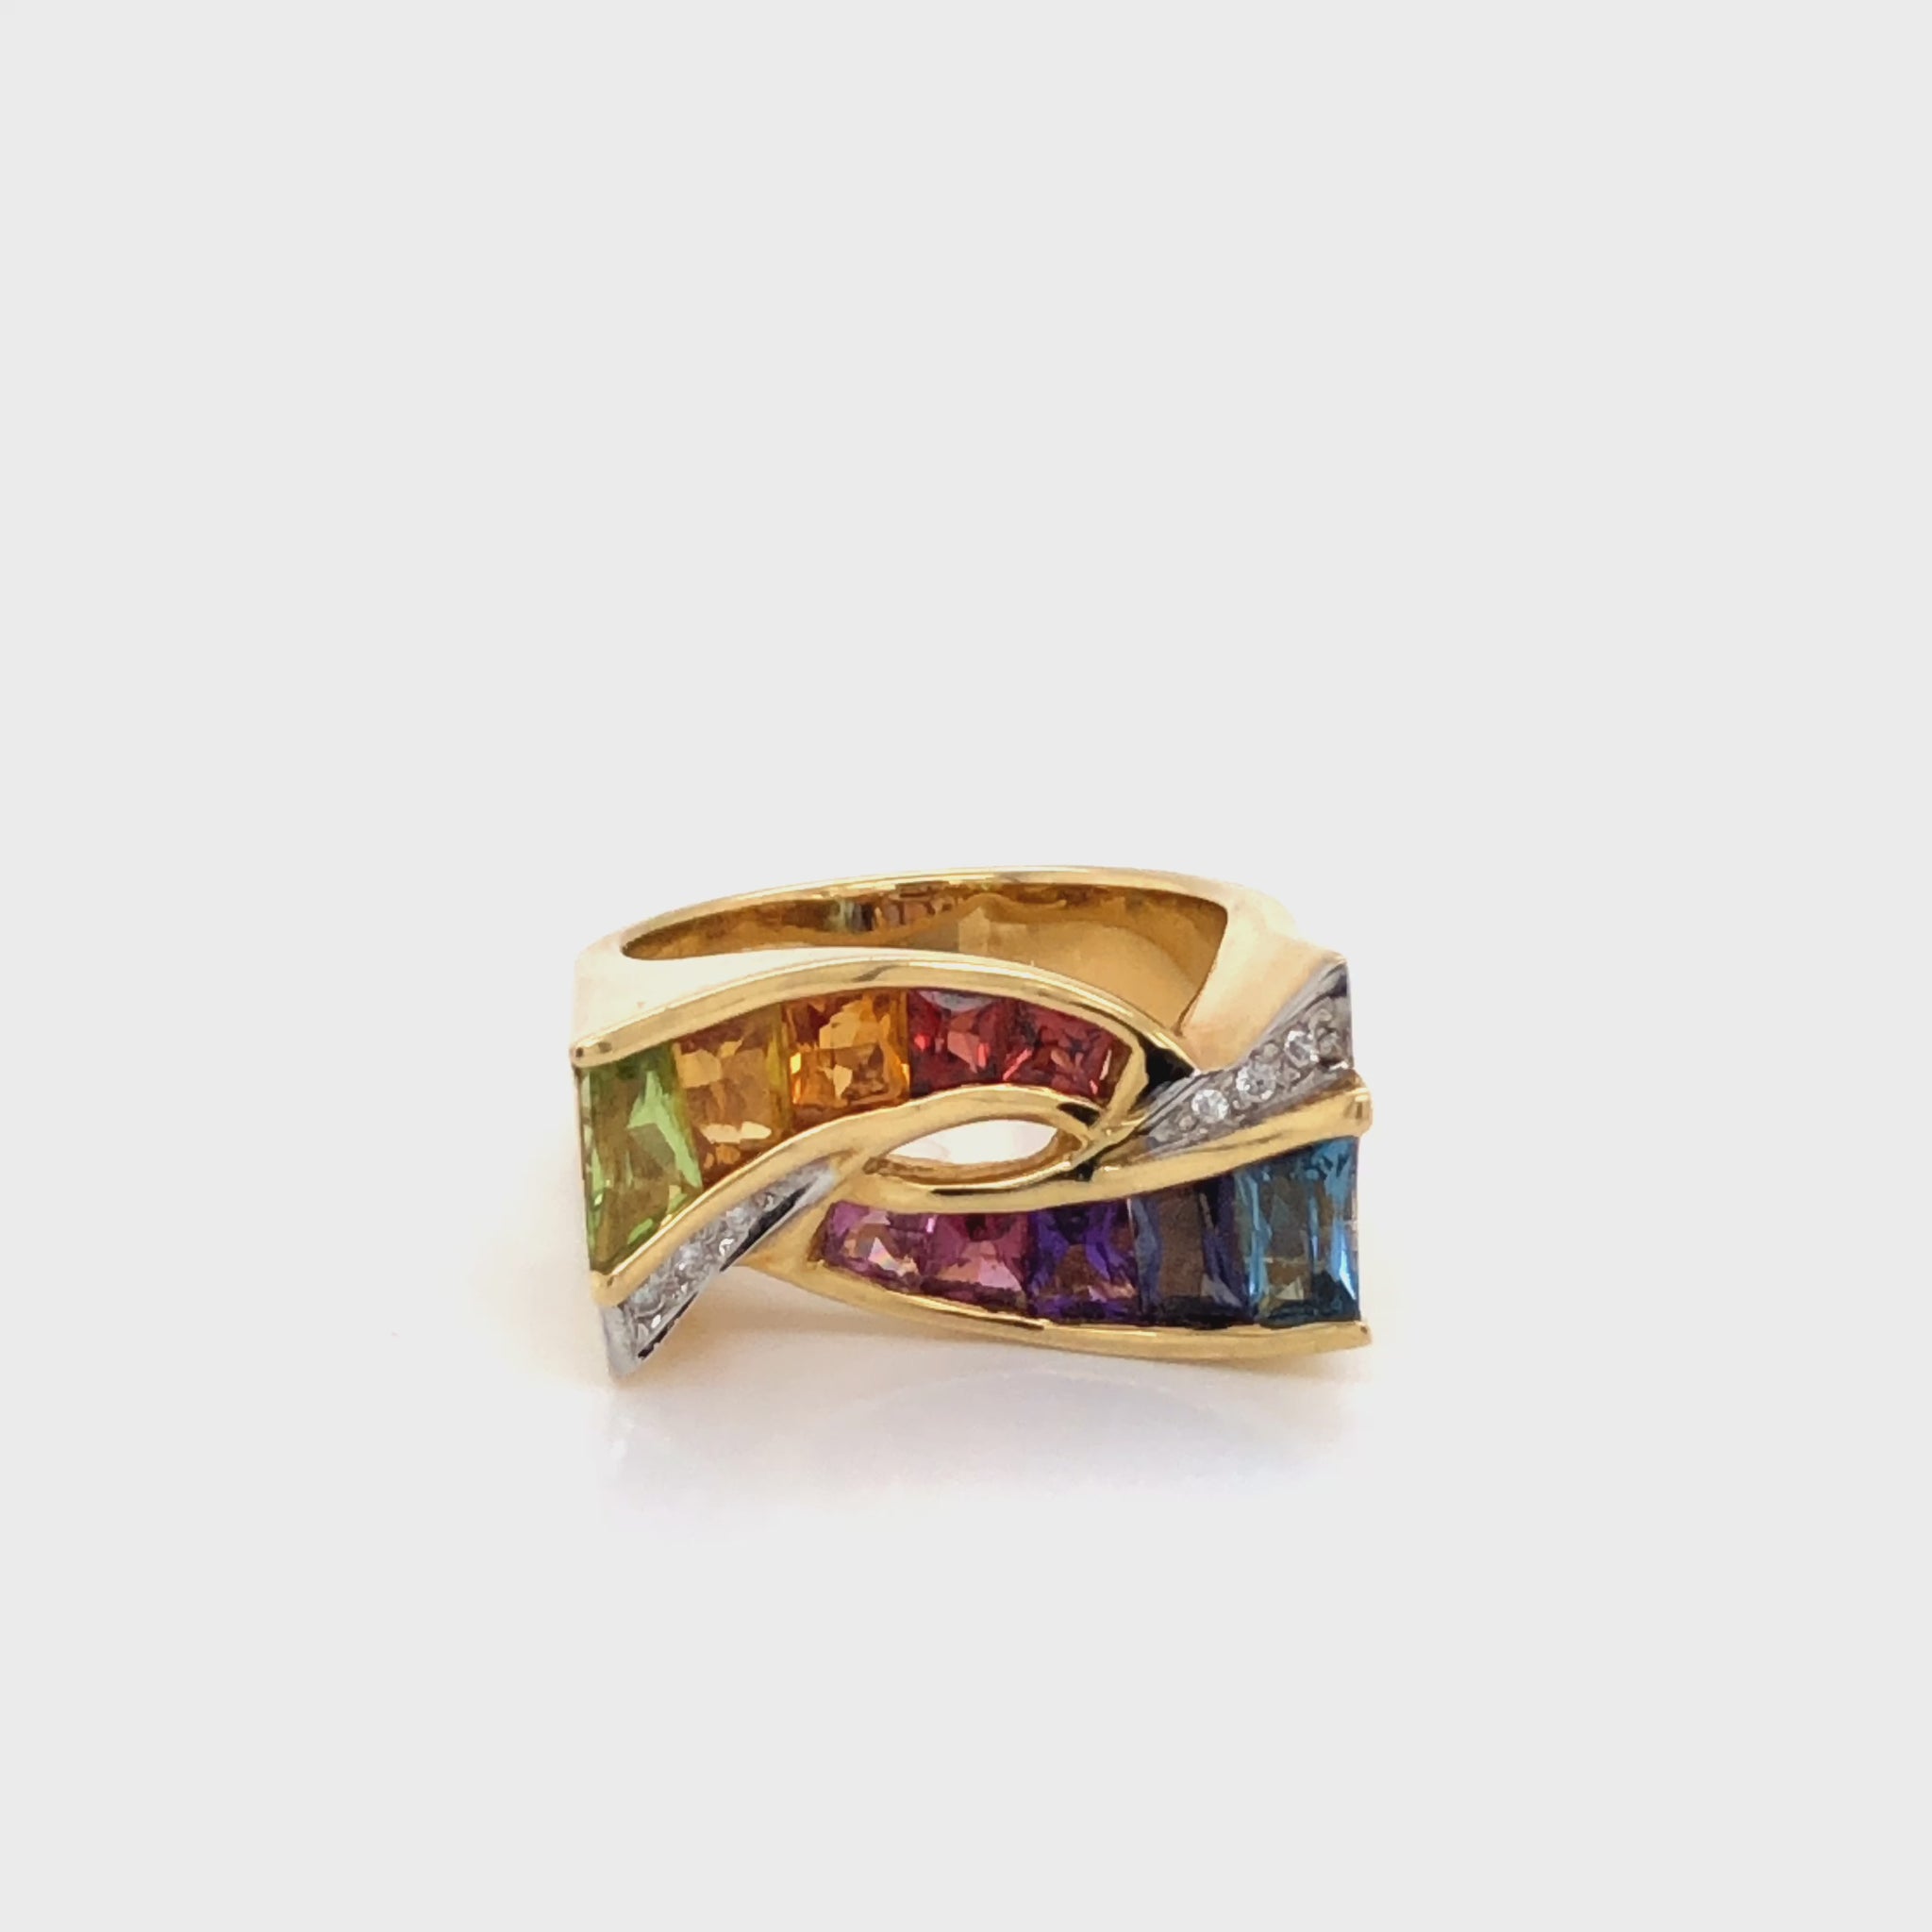 Buy Multicolor Diamond Ring